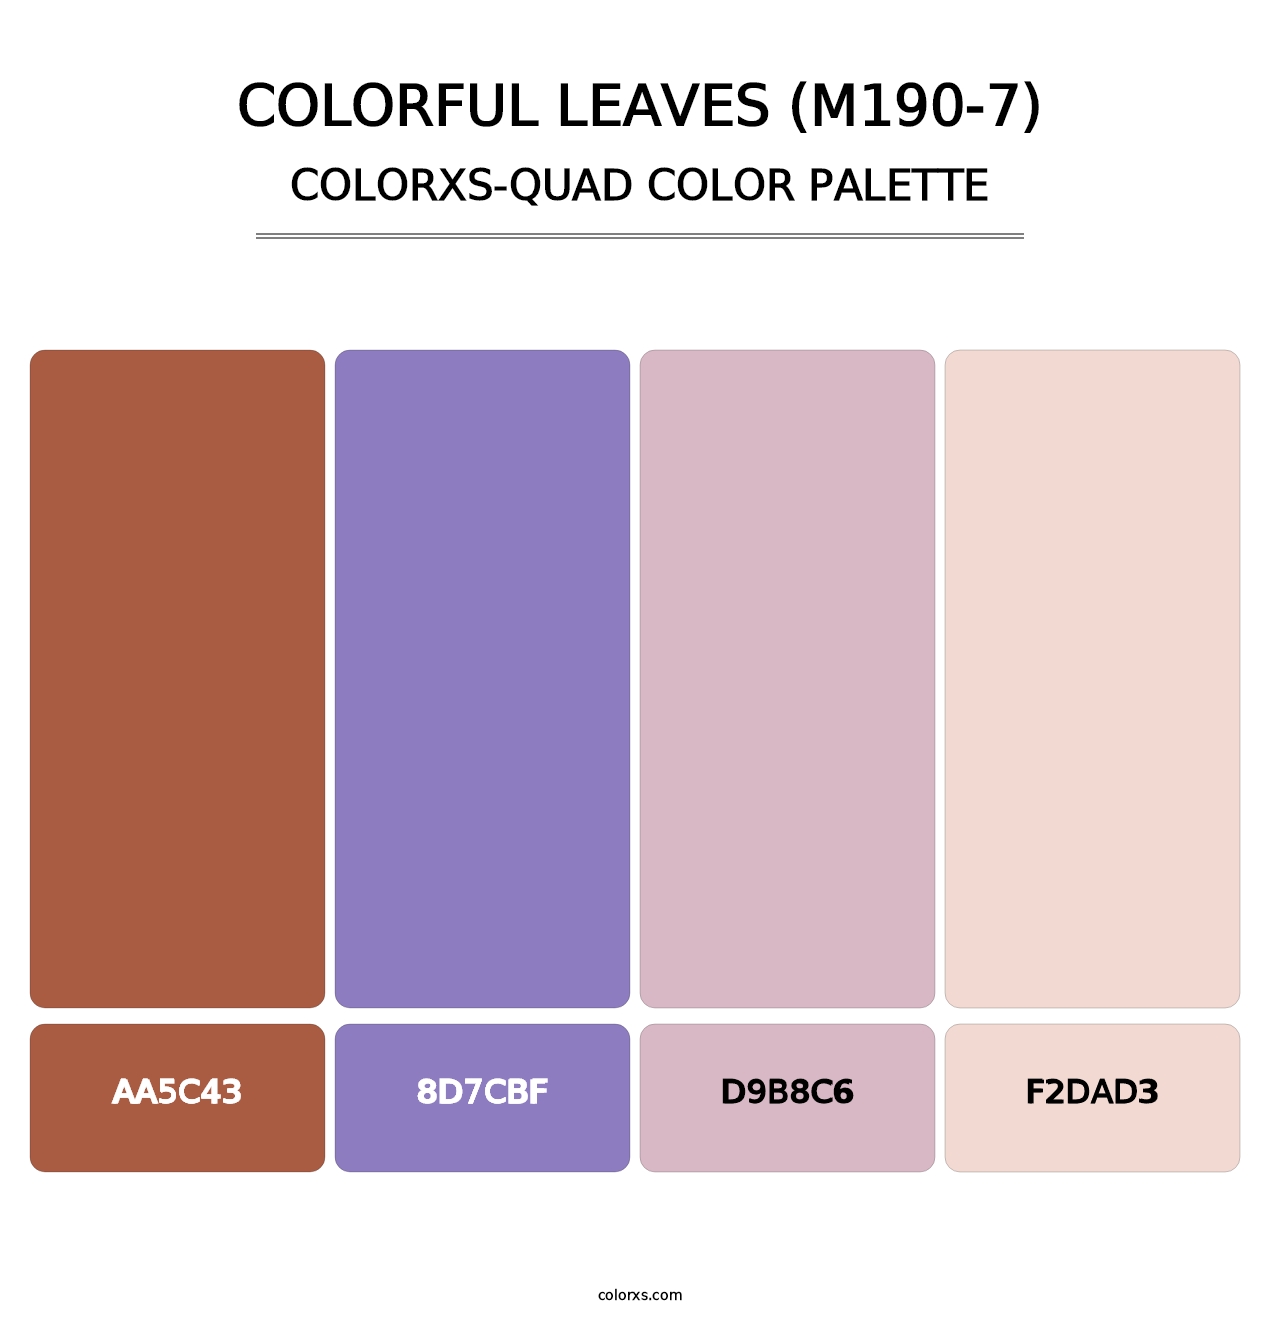 Colorful Leaves (M190-7) - Colorxs Quad Palette